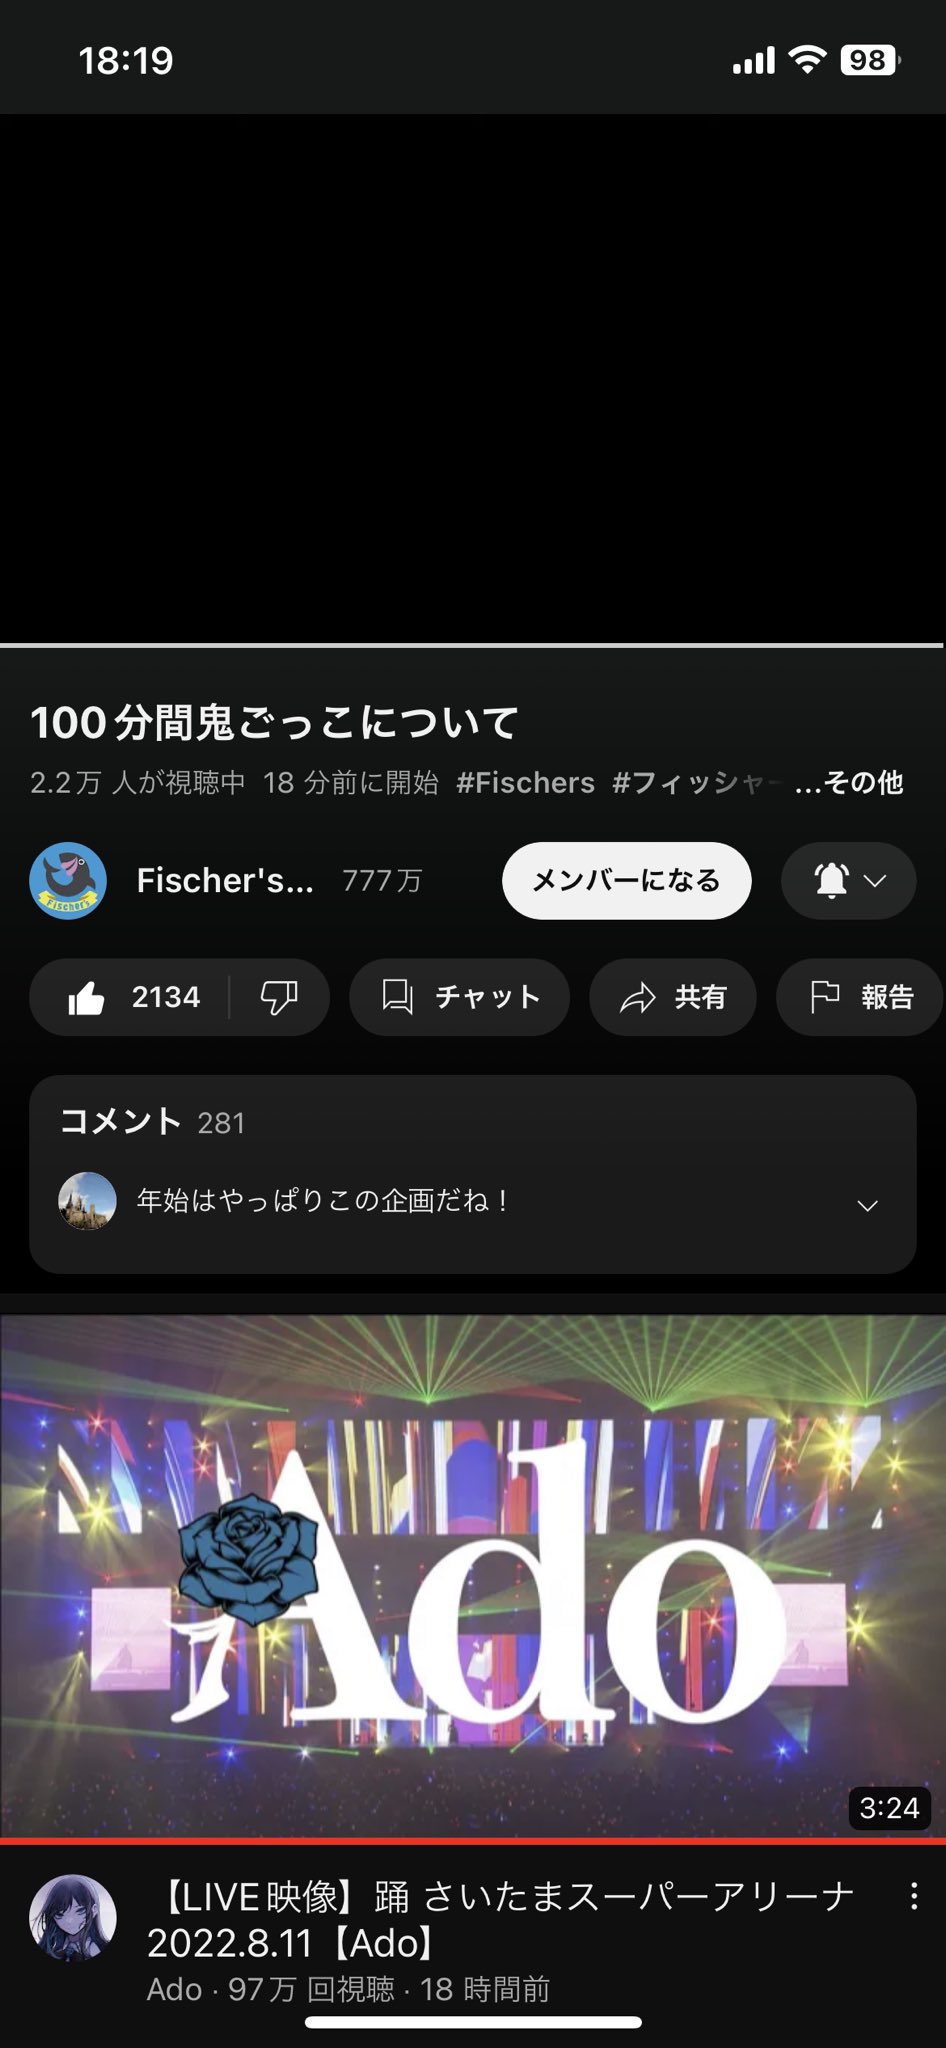 フィッシャーズ鬼ごっこ - Twitter Search / Twitter